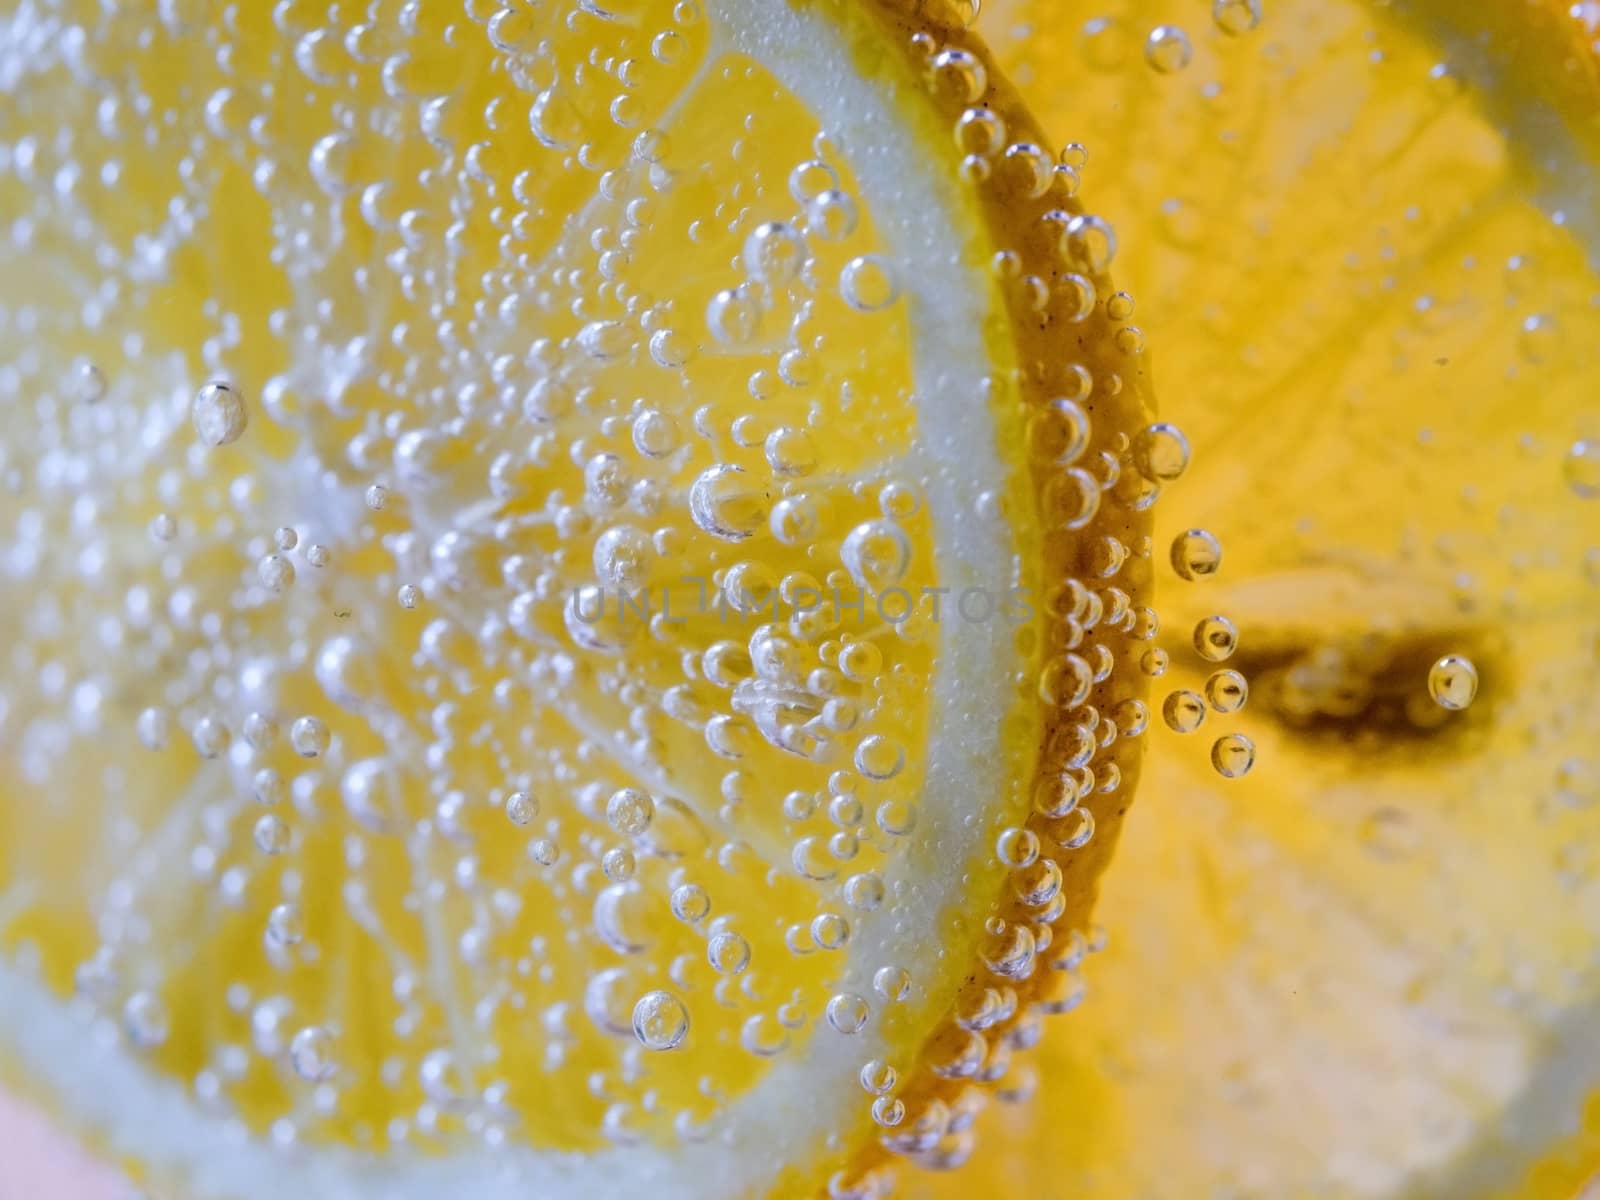 Lemon Slice in Clear Soda Water by leieng